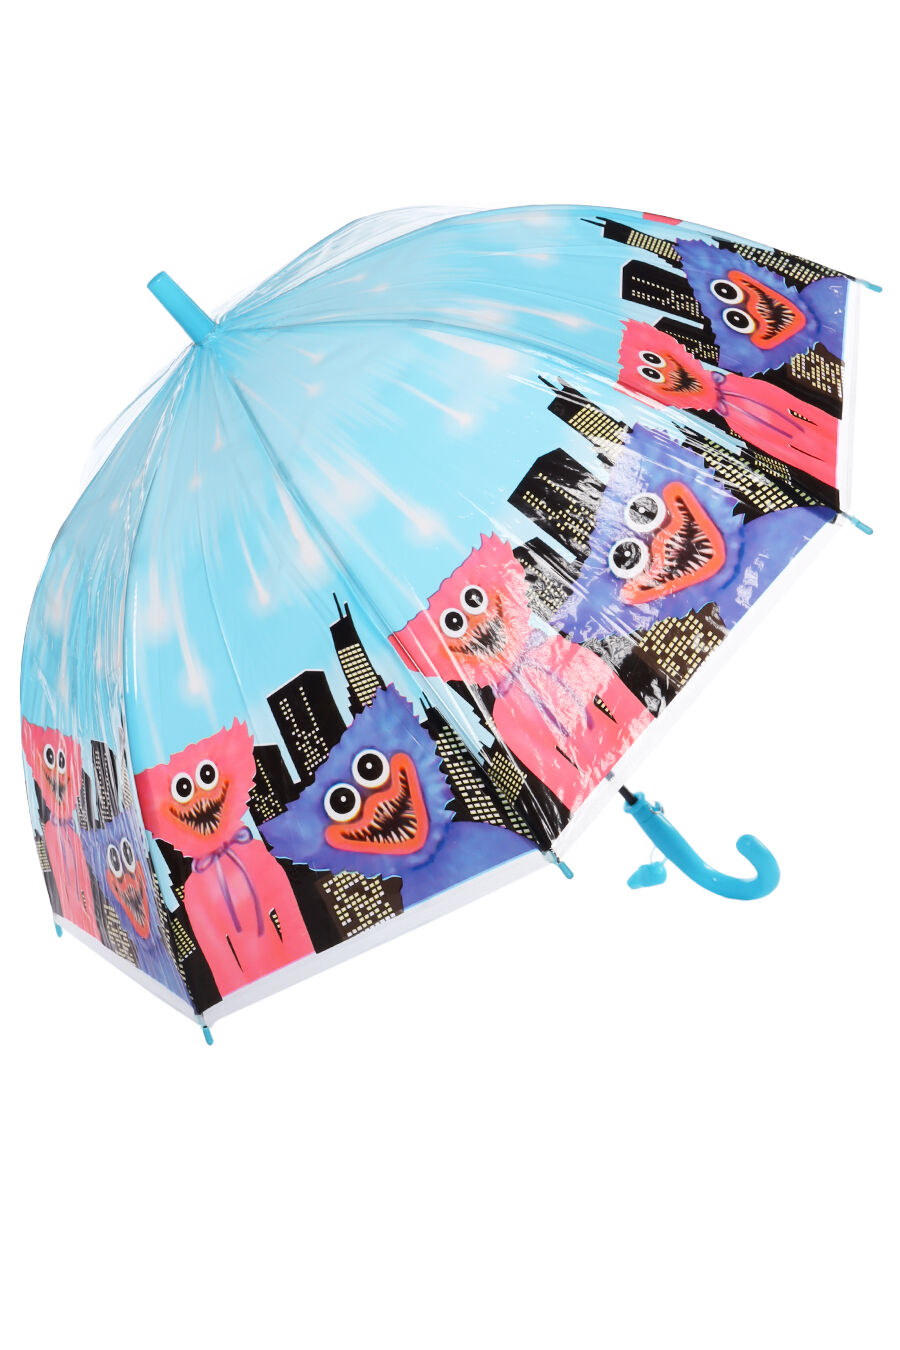 Зонт дет. Panda 204-4 полуавтомат трость (голубой)